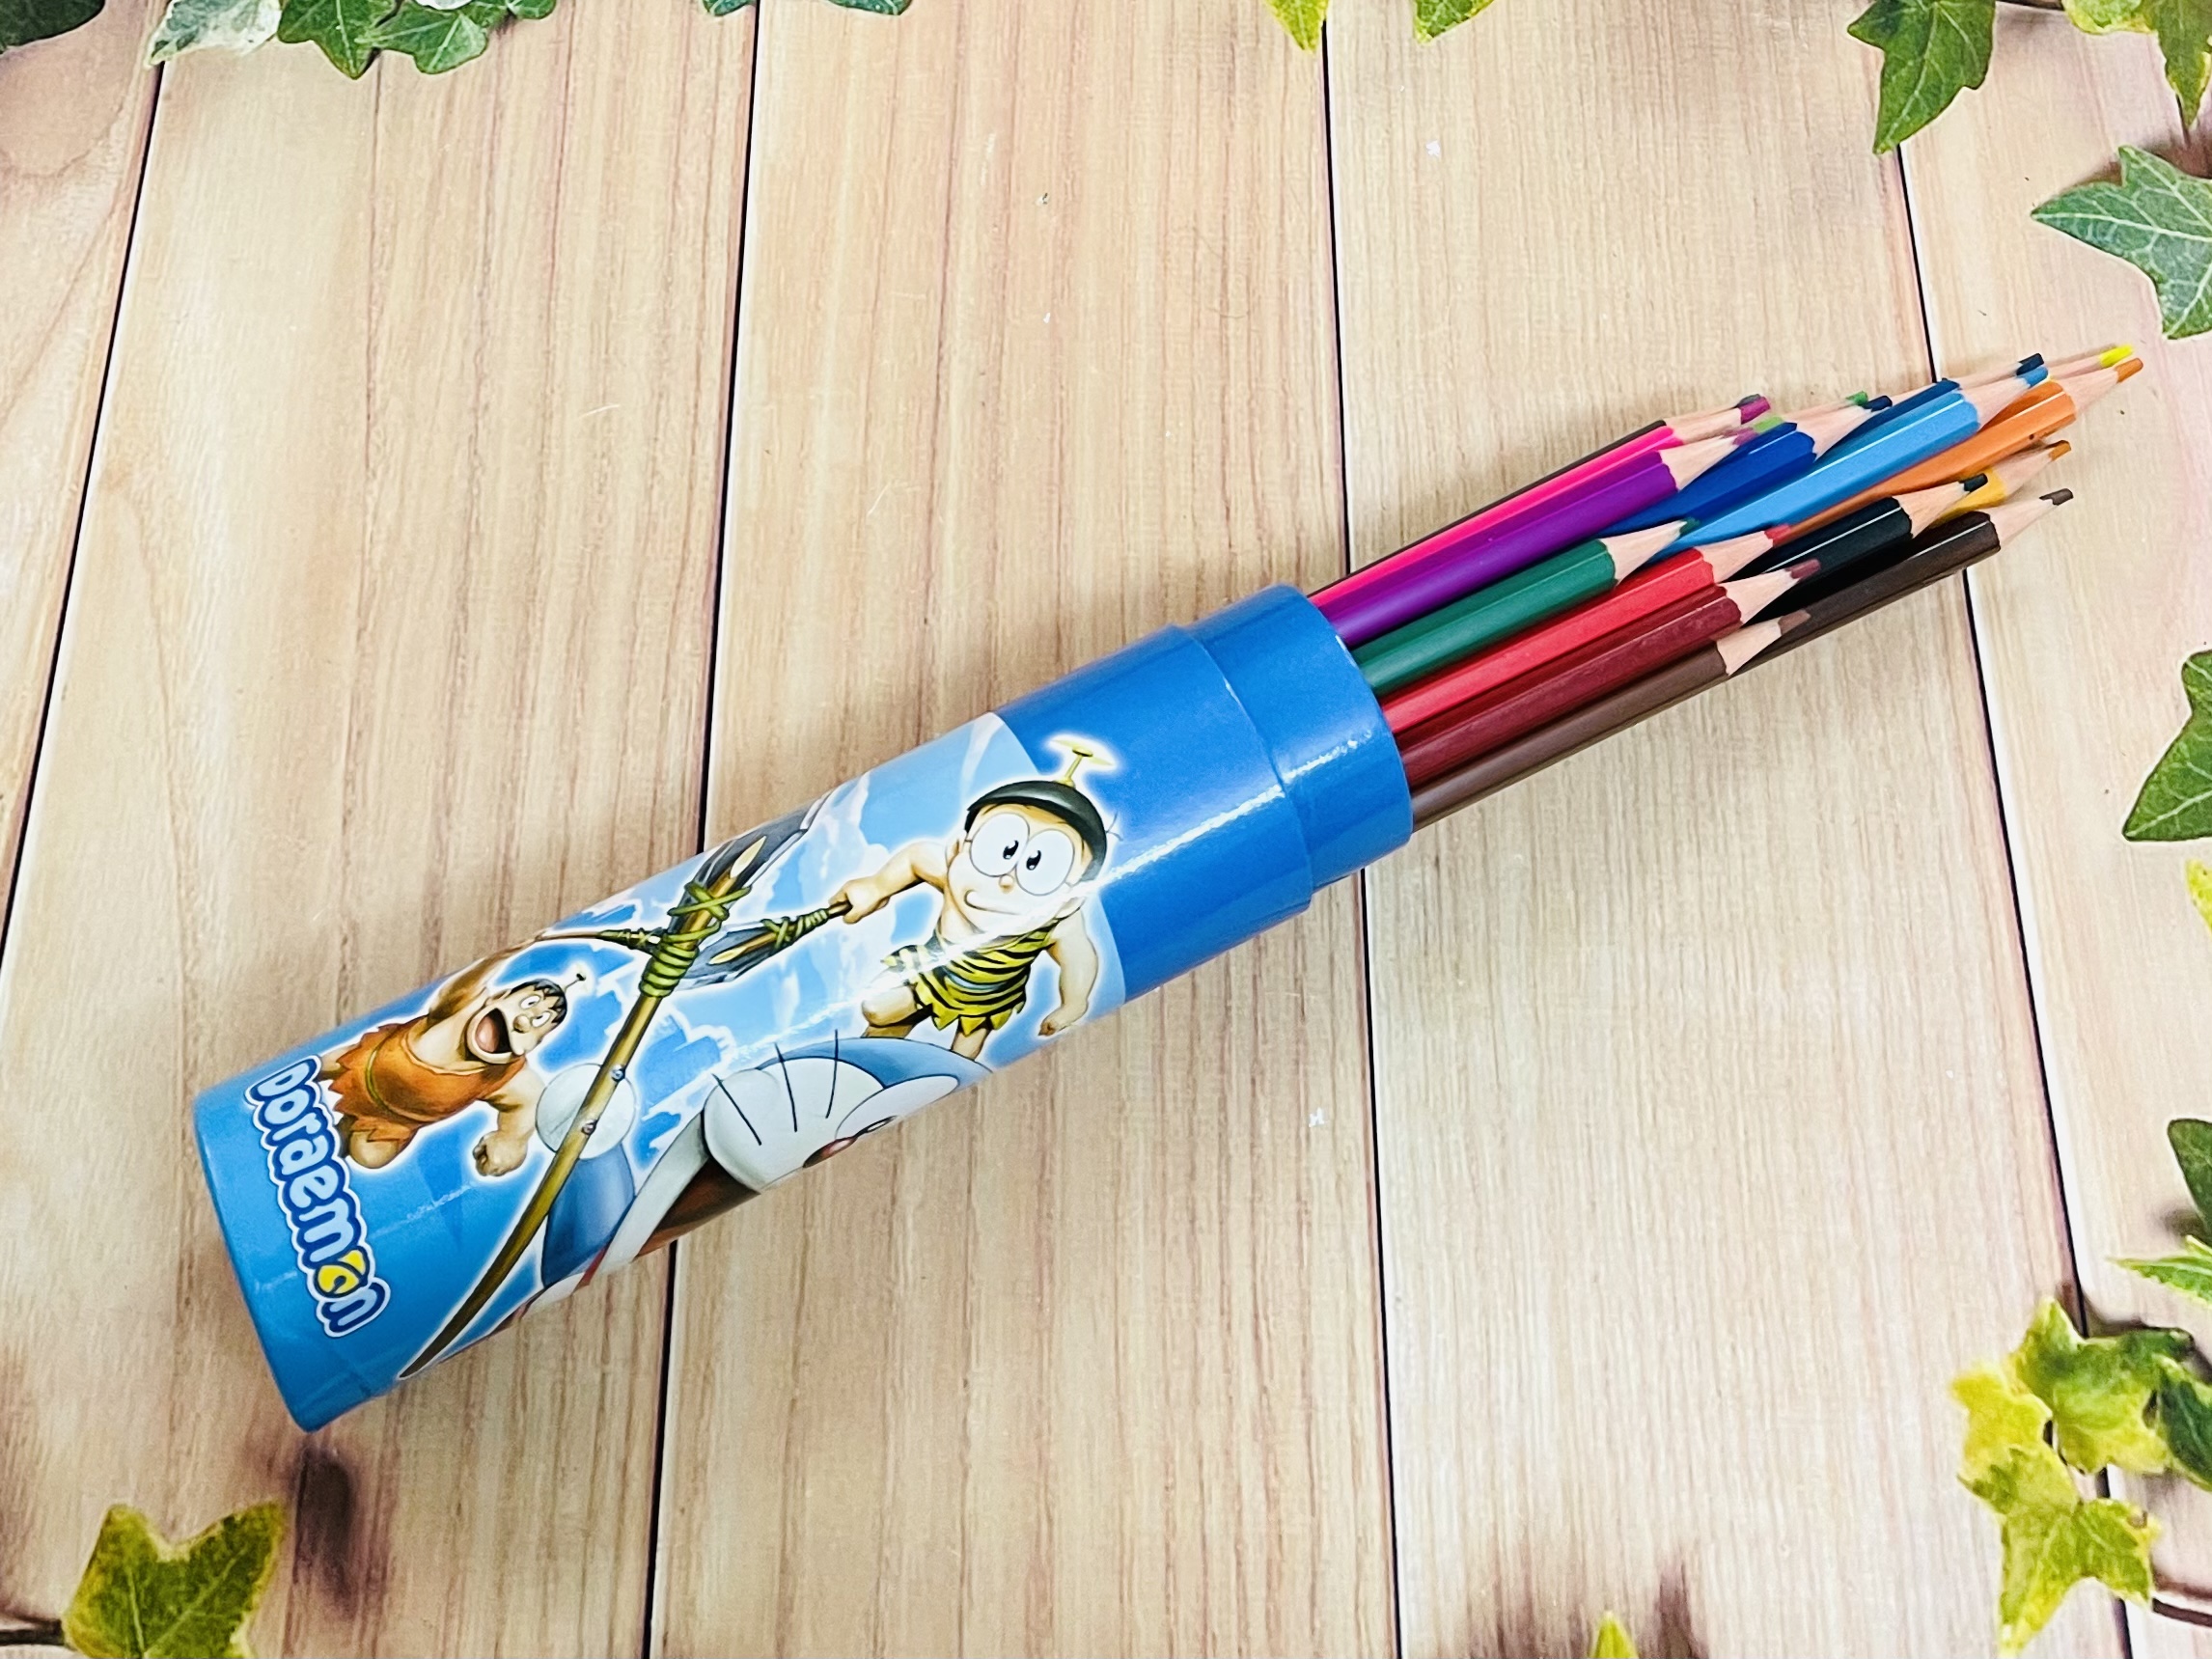 Bộ bút chì màu 12-18 màu kèm gọt chì/ bộ viết chì nhiều màu